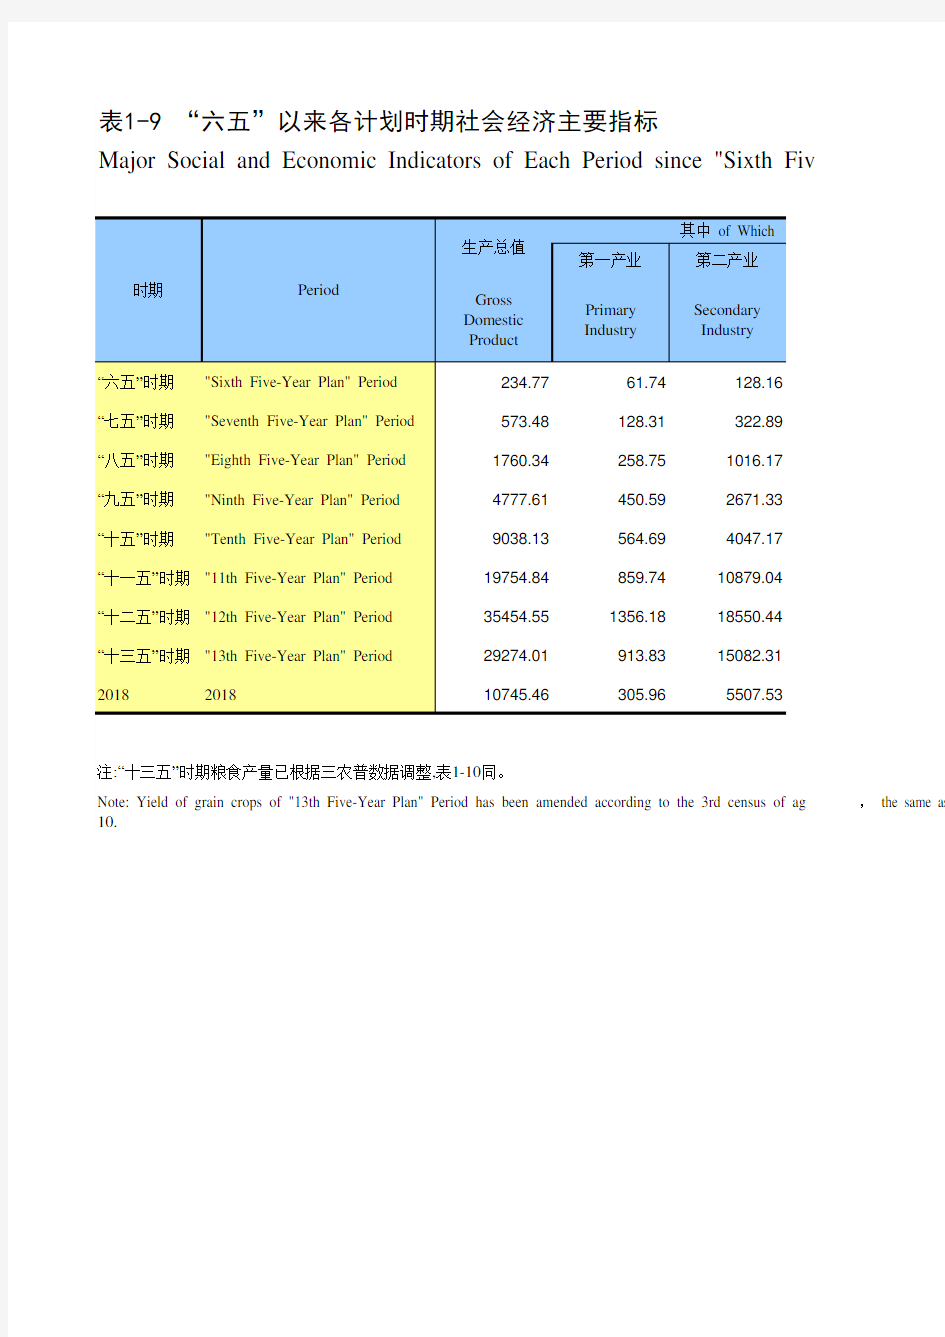 浙江宁波市社会经济发展统计年鉴指标数据：1-9 “六五”以来各计划时期社会经济主要指标